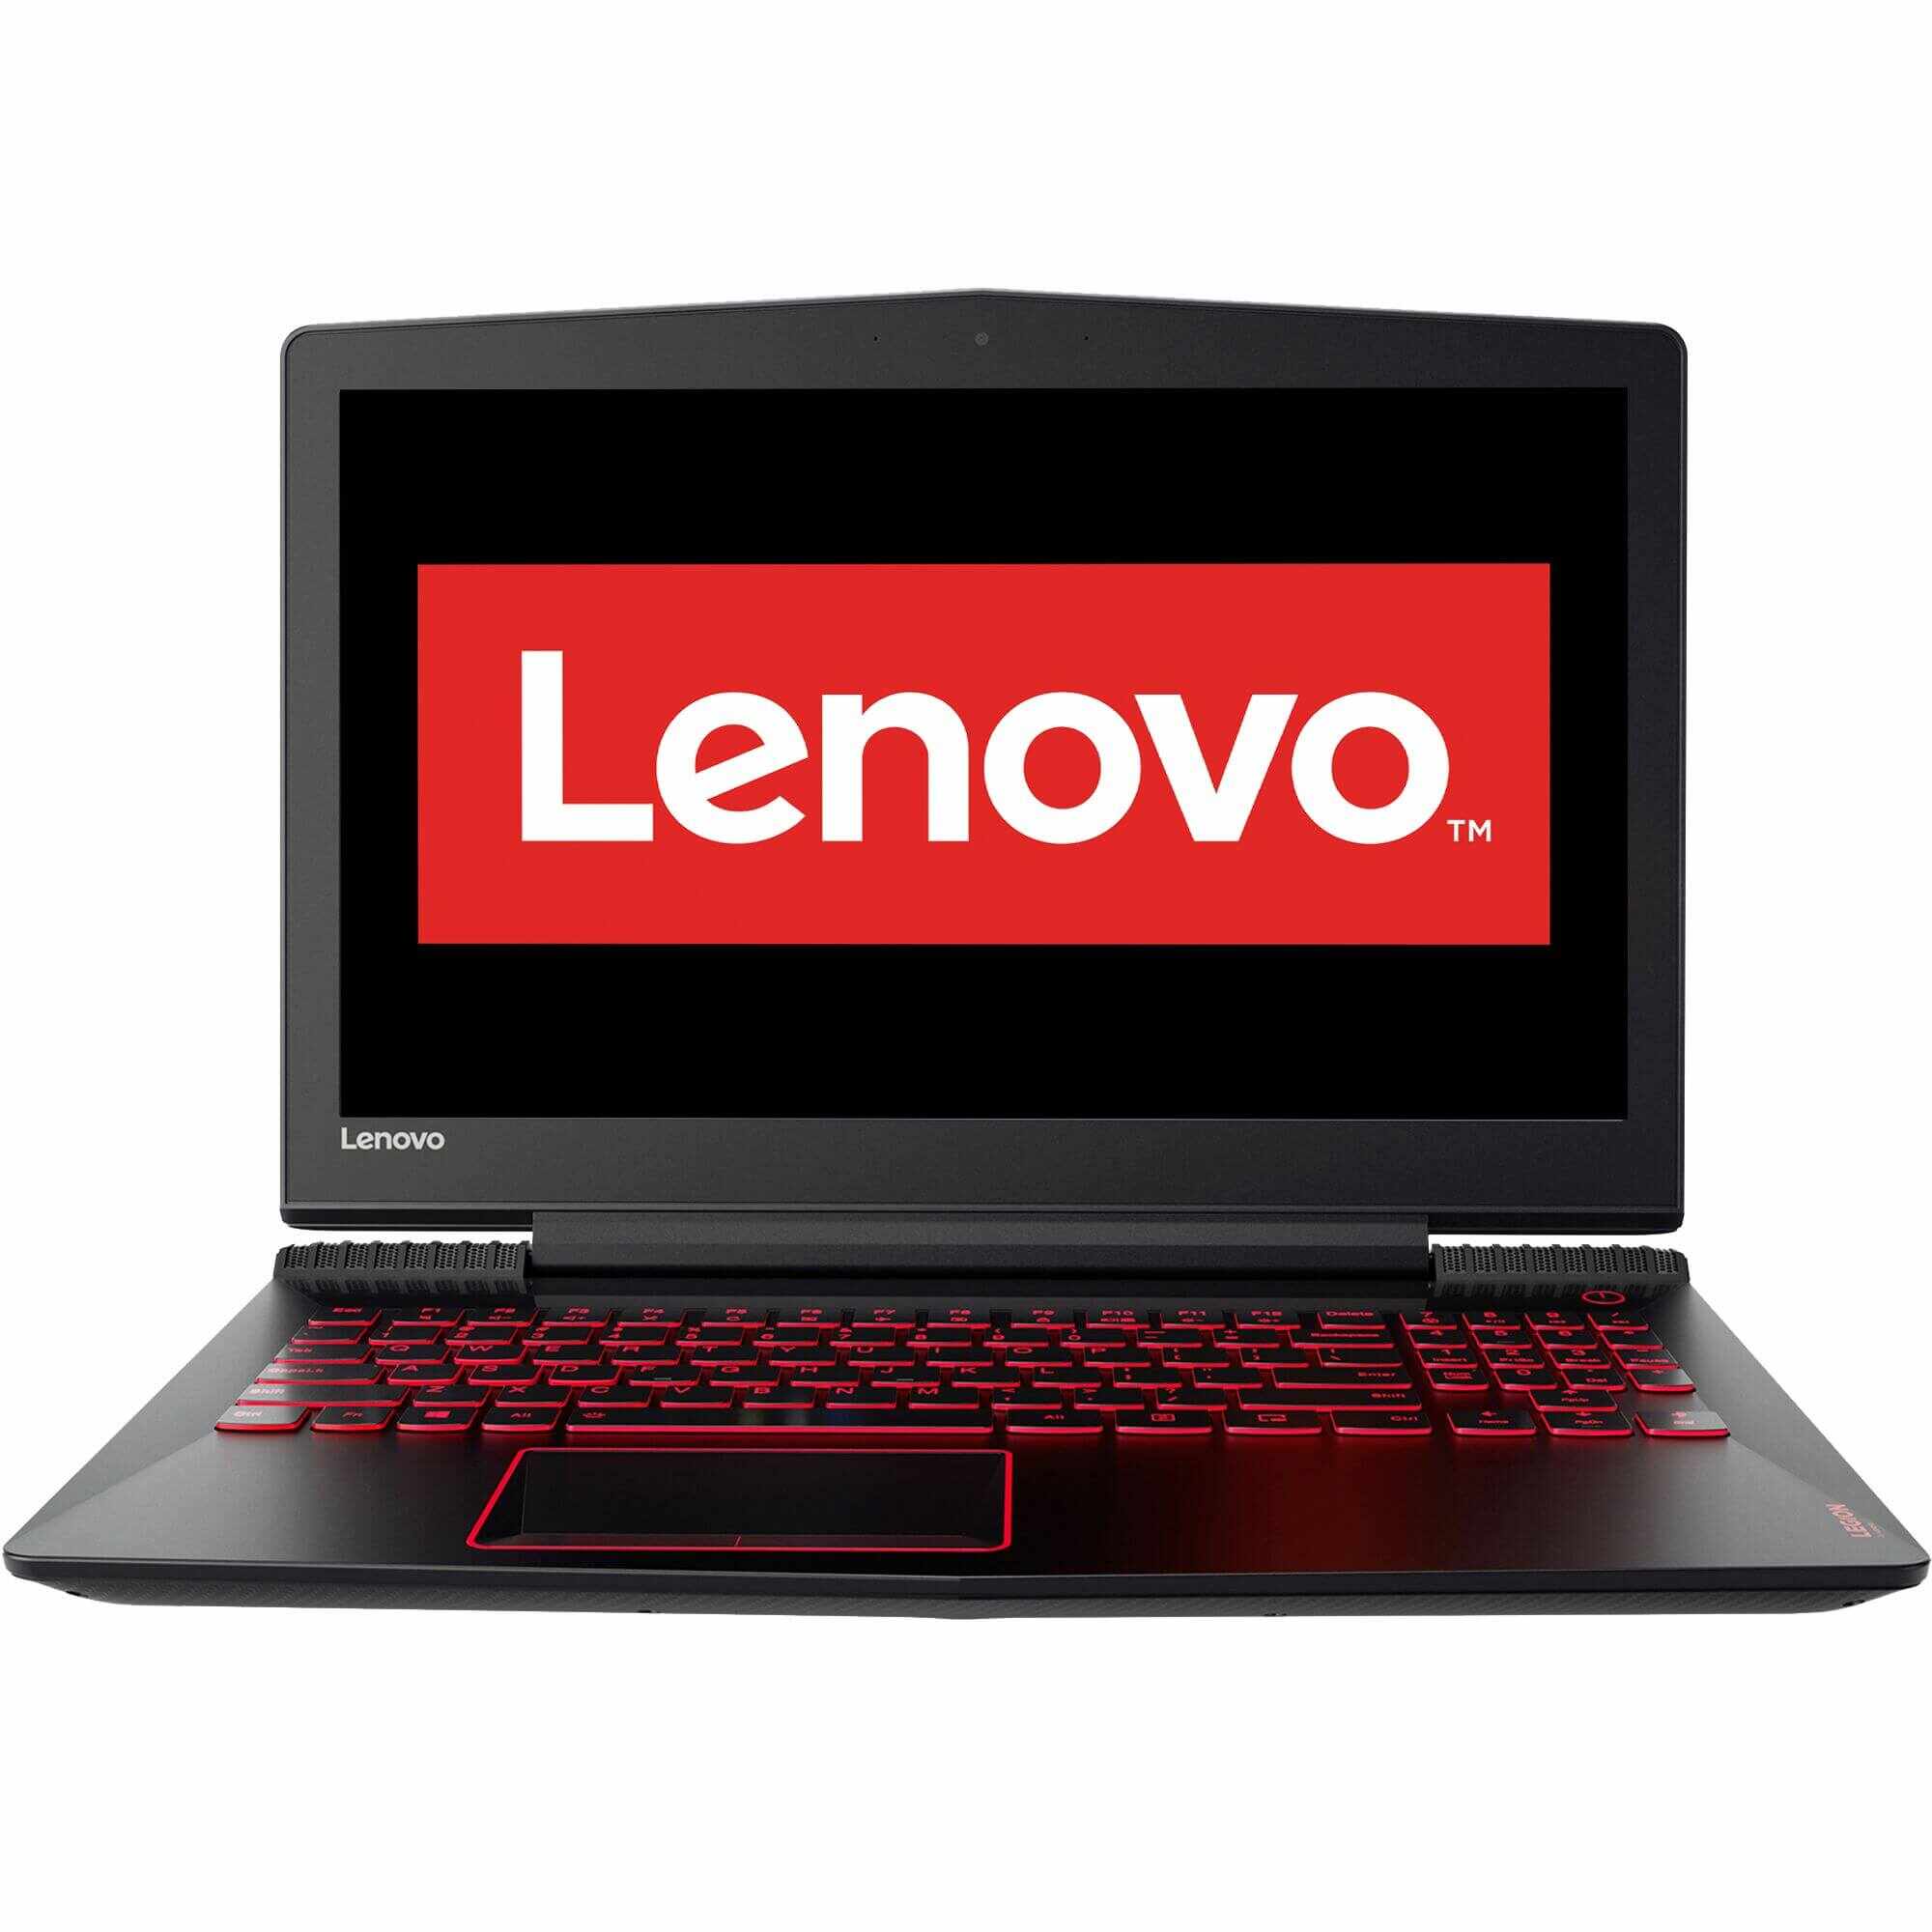 Laptop Lenovo Legion Y520-15IKBN, Intel Core i5-7300HQ, 8GB DDR4, HDD 1TB + SSD 128GB, Nvidia GeForce GTX 1050 Ti 4GB, Free DOS